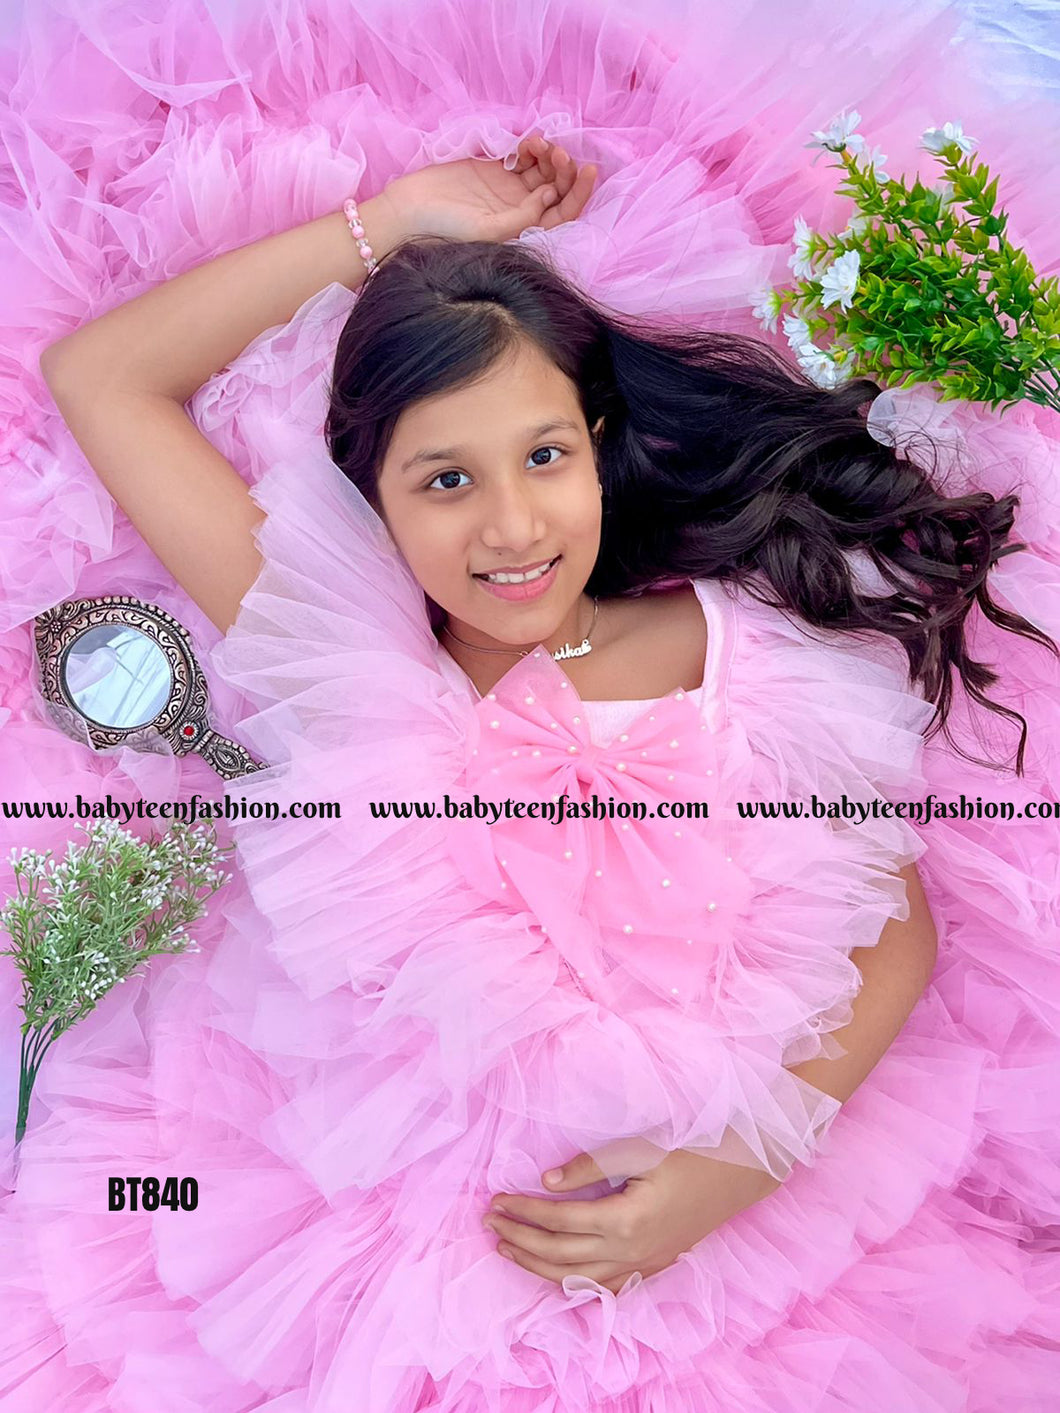 BT840 Candy Floss Dream Dress - Pink Delight